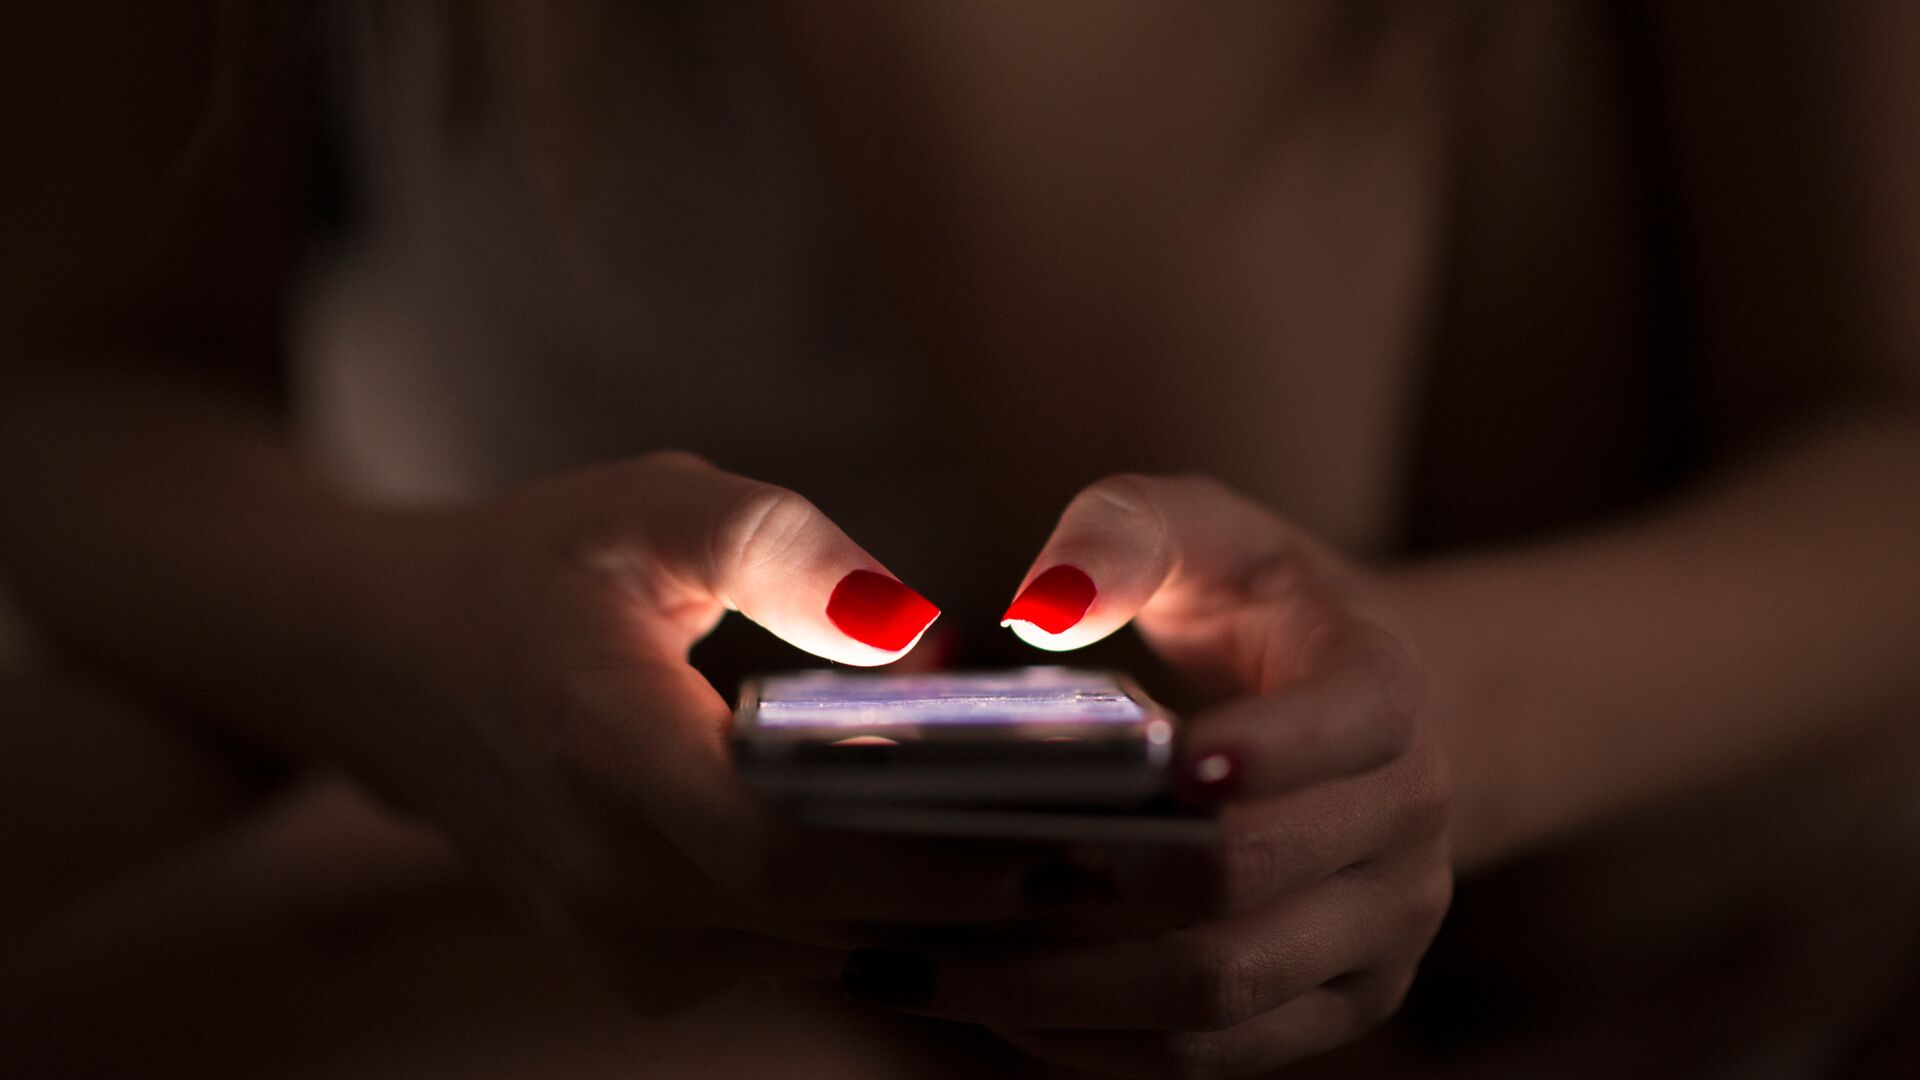 Una mujer que usa un teléfono celular en la oscuridad. Sus uñas están pintadas de rojo brillante.